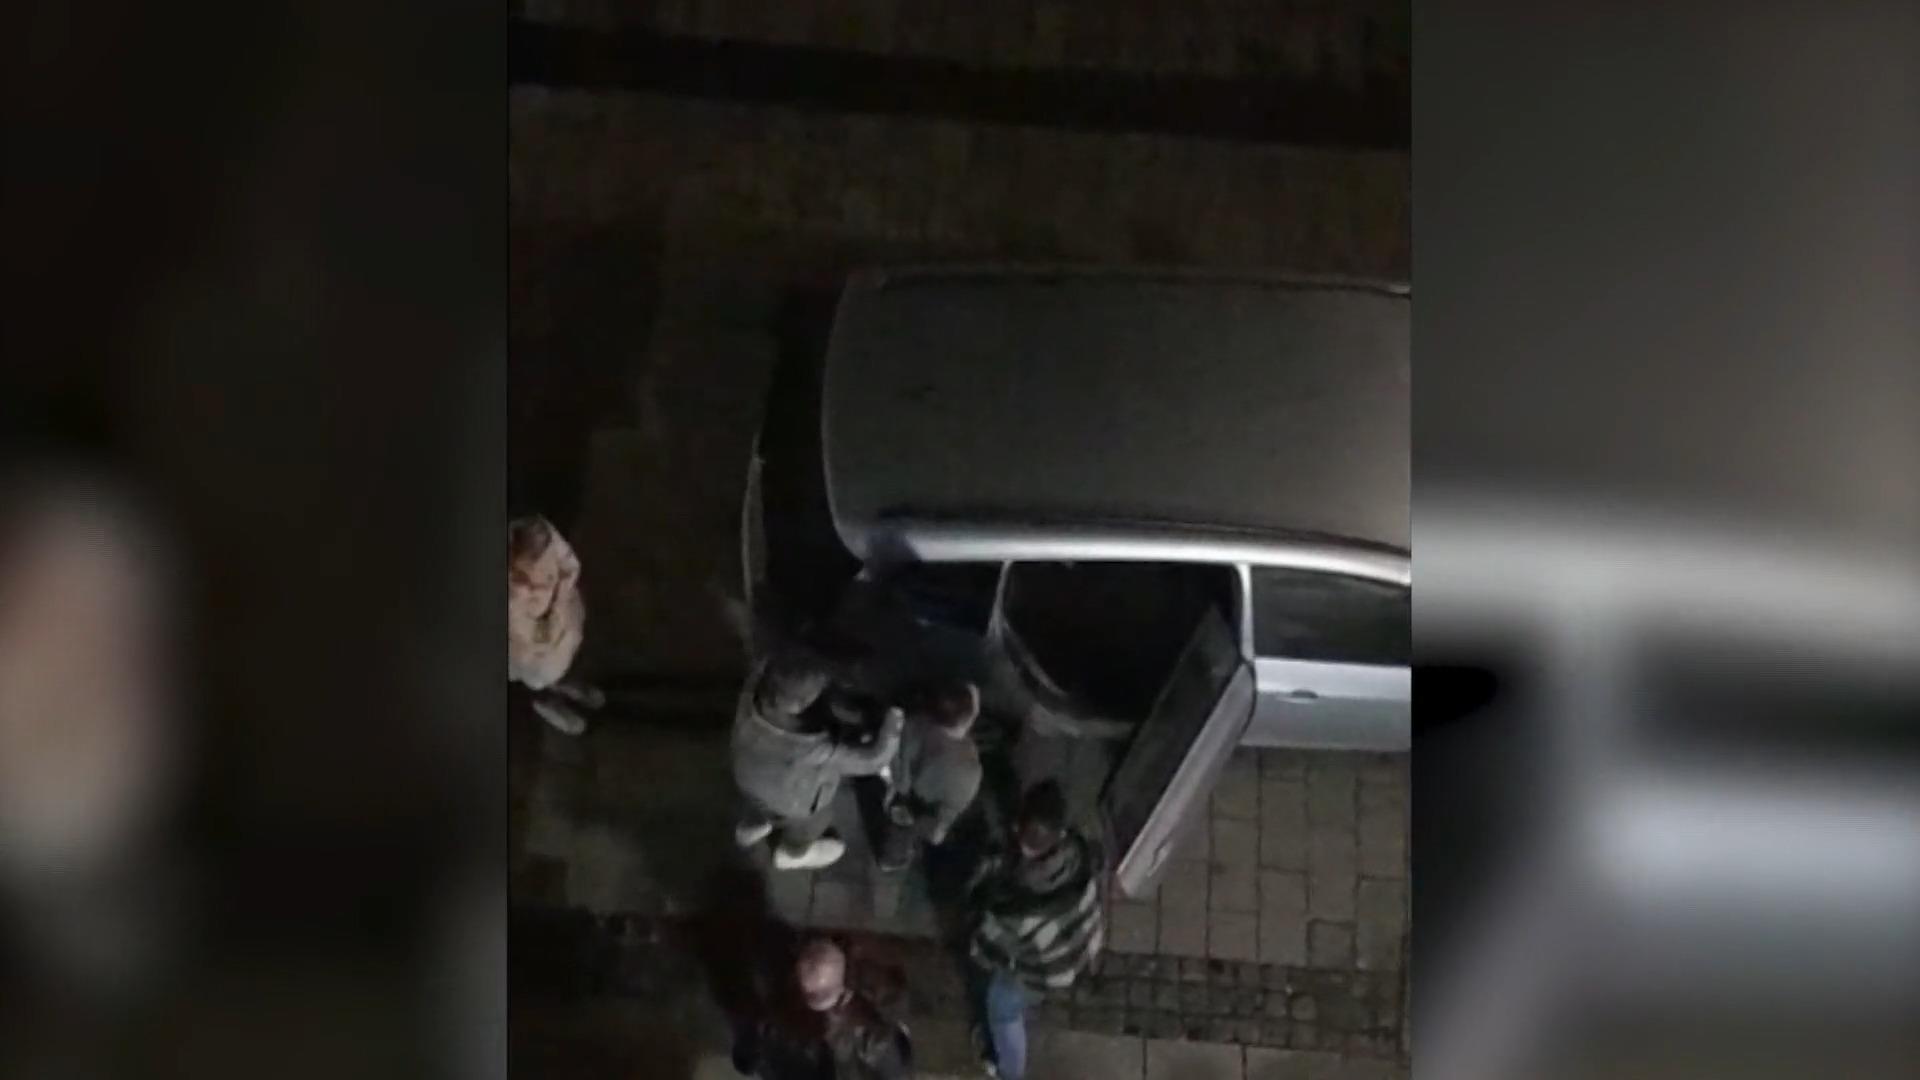 Nachbar filmte Festnahme von Messerangreifer Attacke im Fitnessstudio